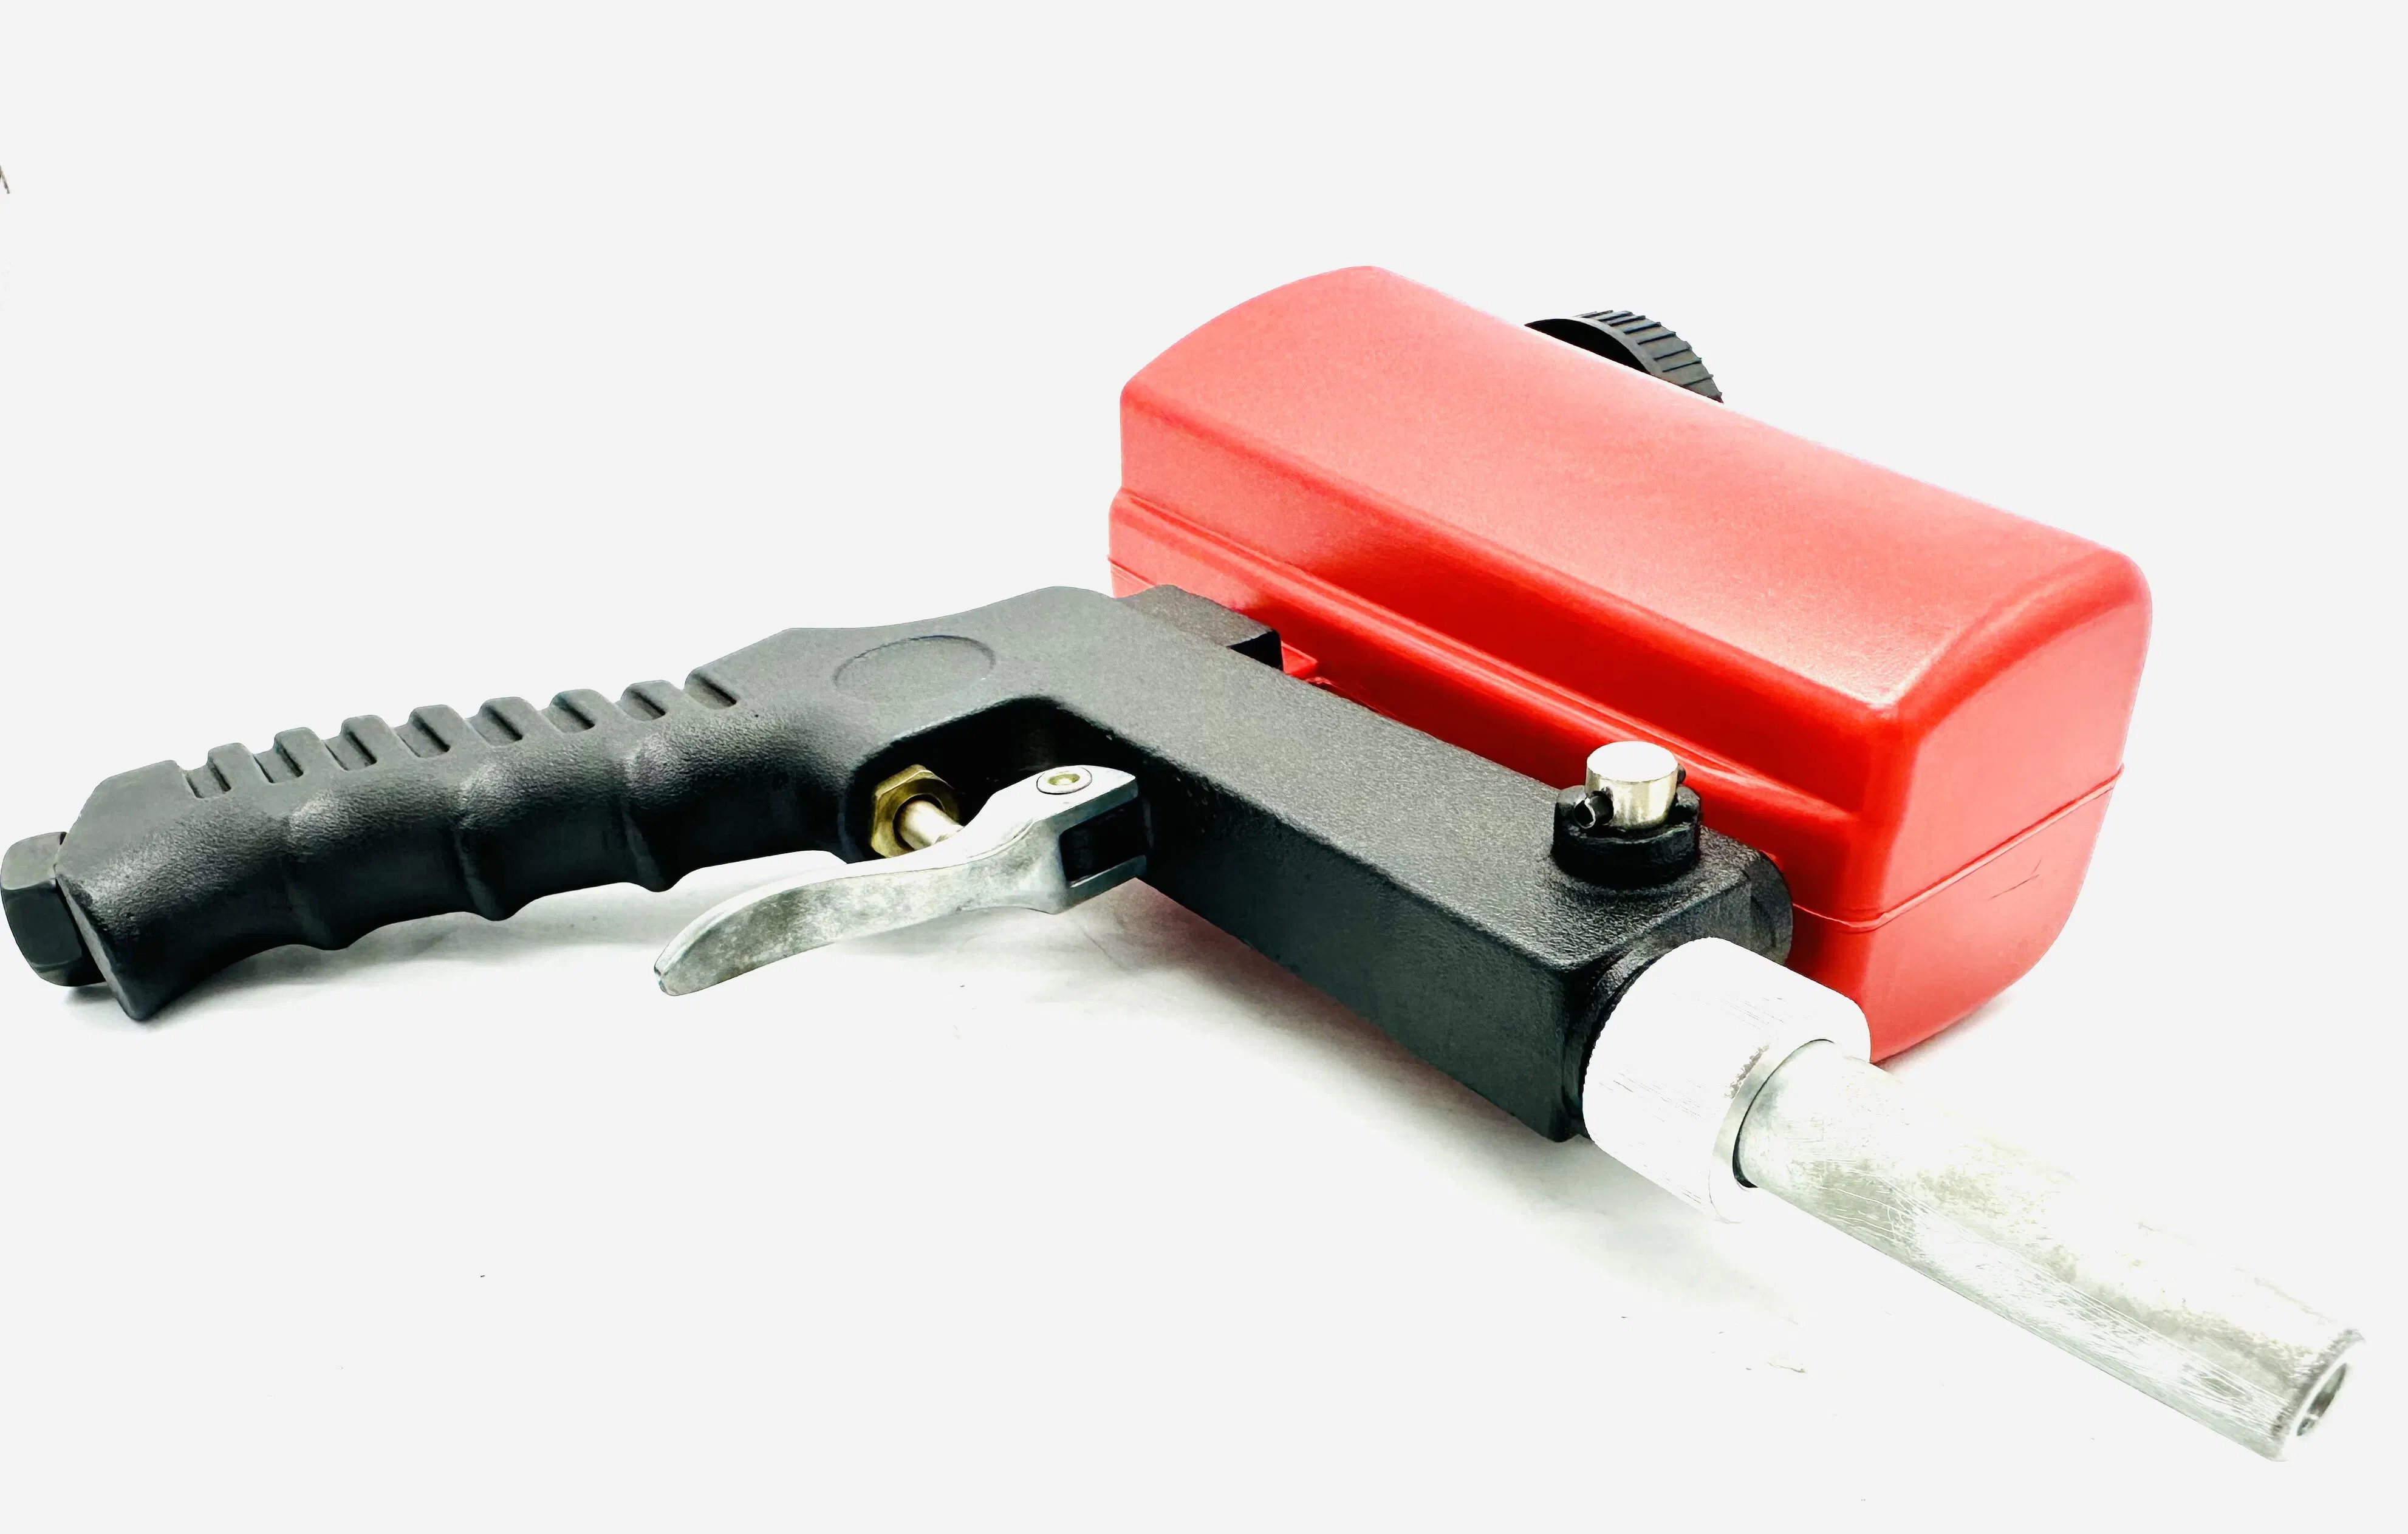 Пневматические инструменты воздух с высокой скоростью Sandblaster портативных медиа Blaster смазочного шприца